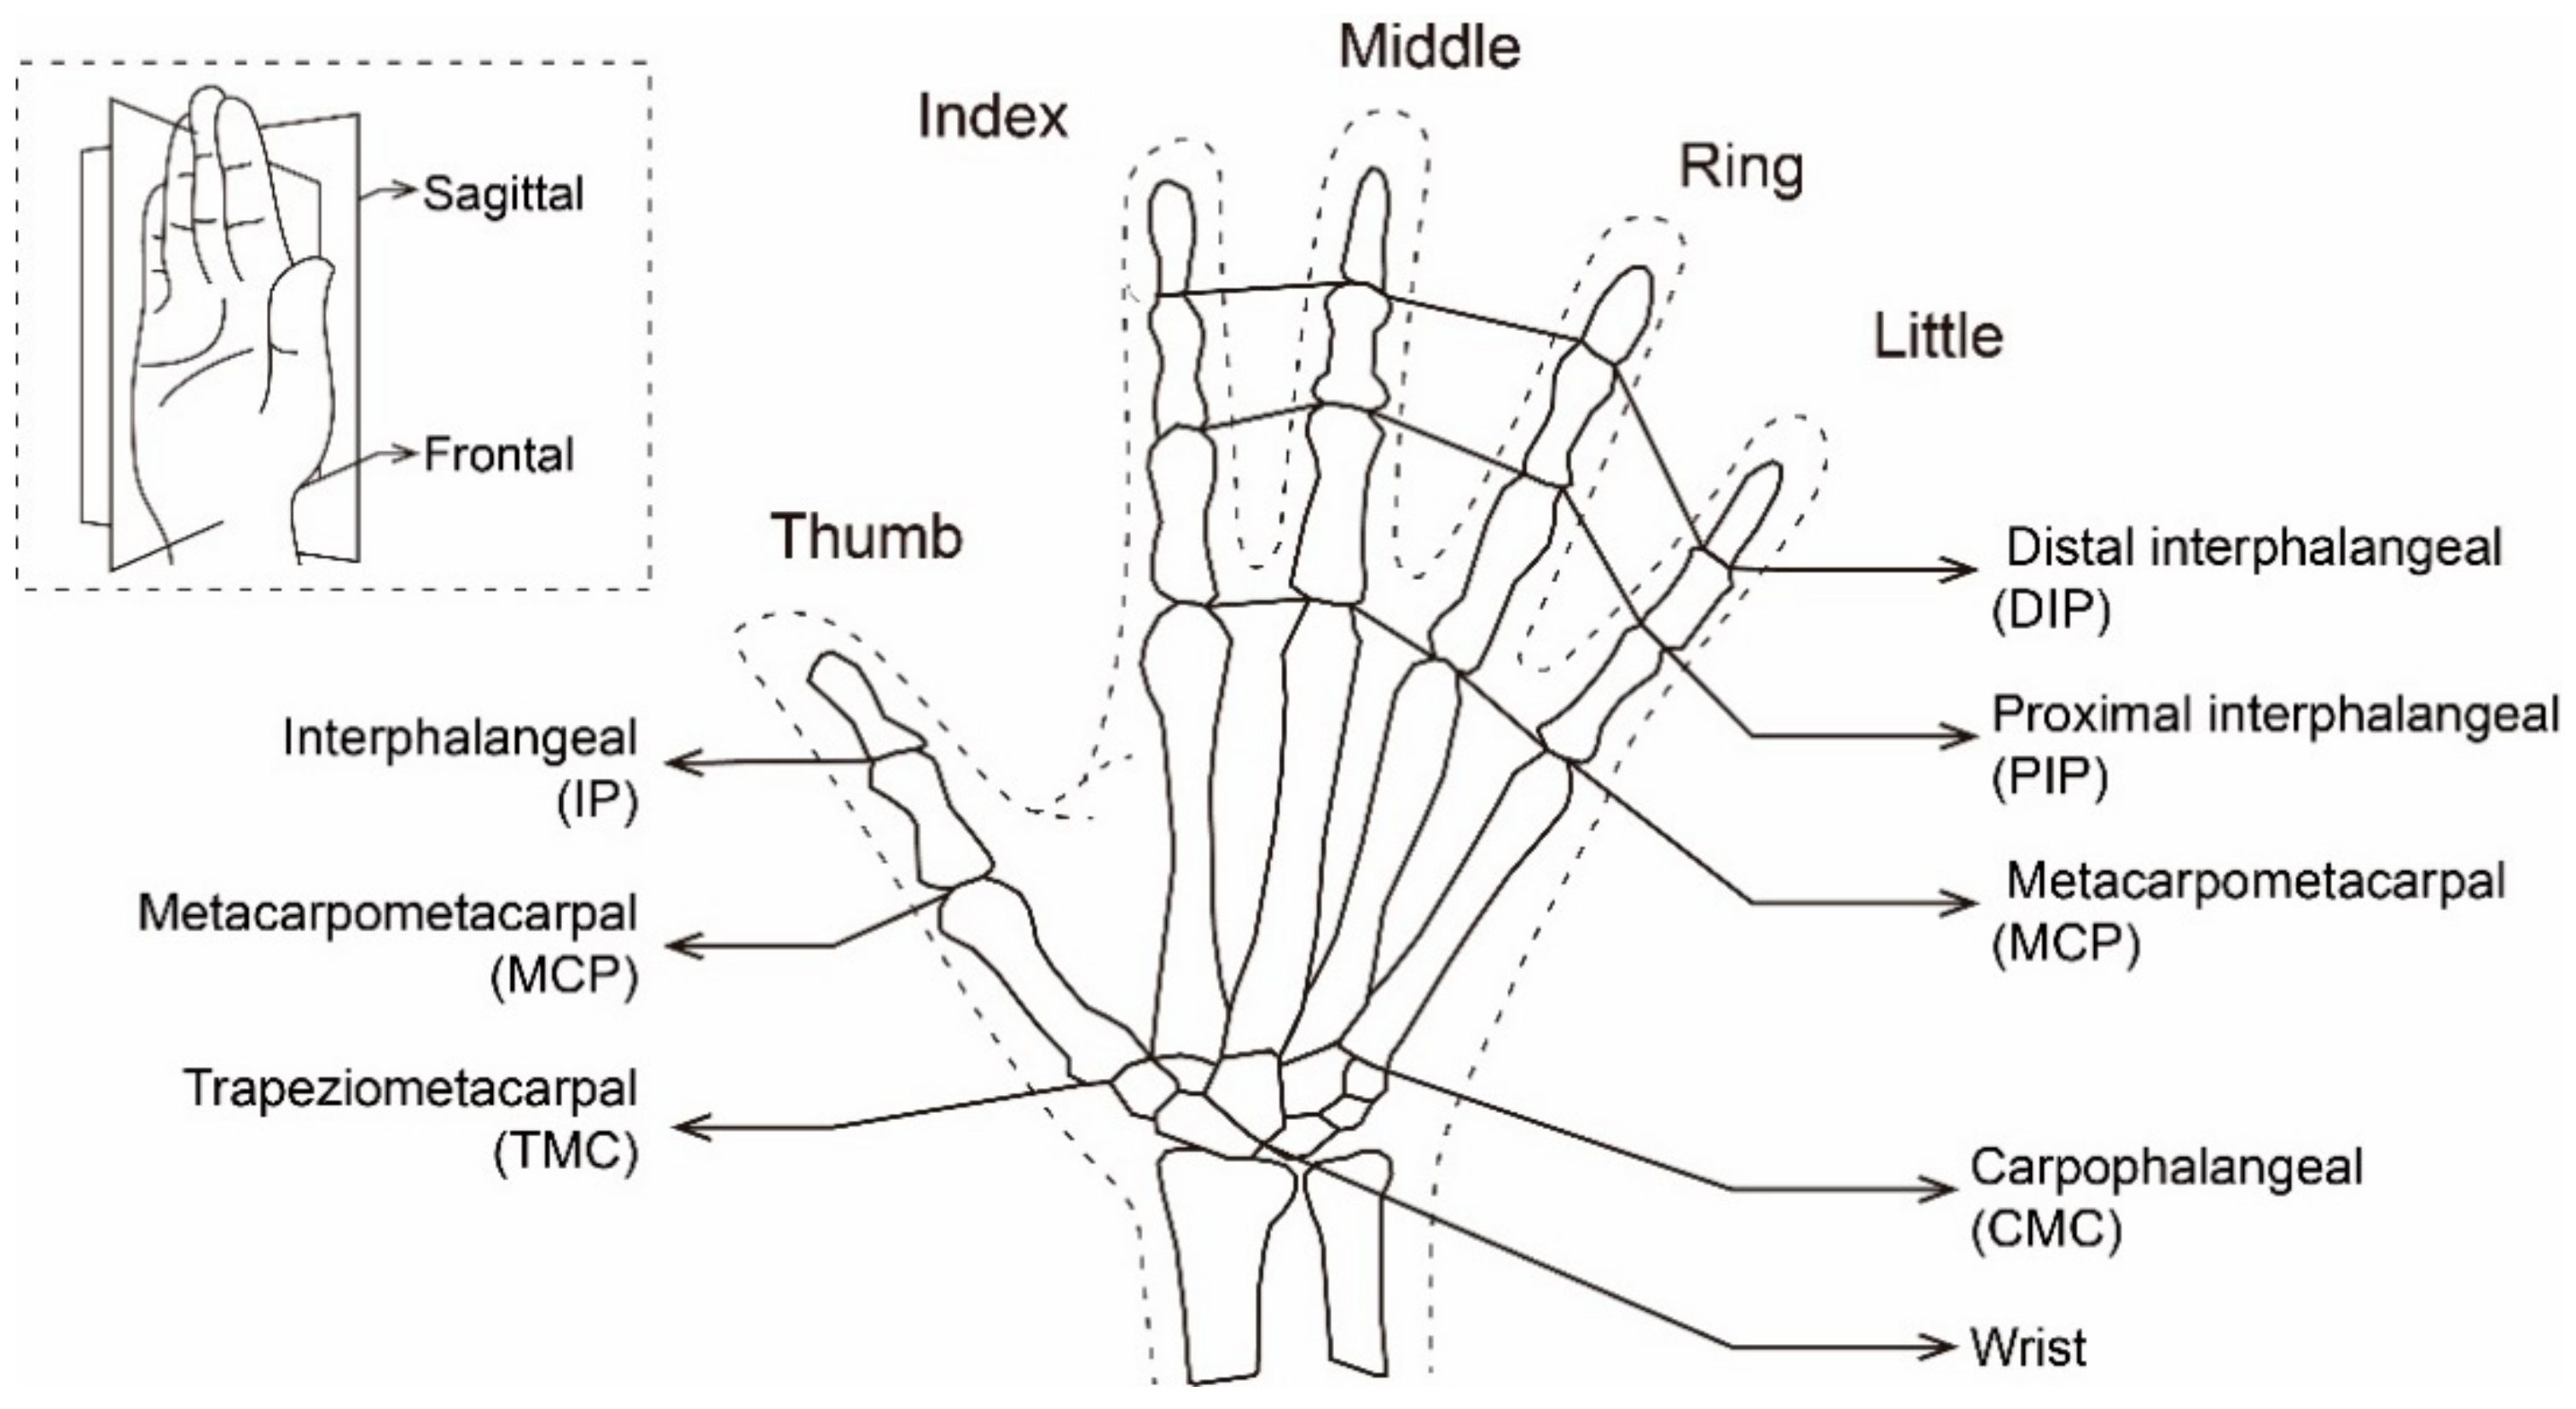 Linear trend contrast (index finger < middle finger < ring finger